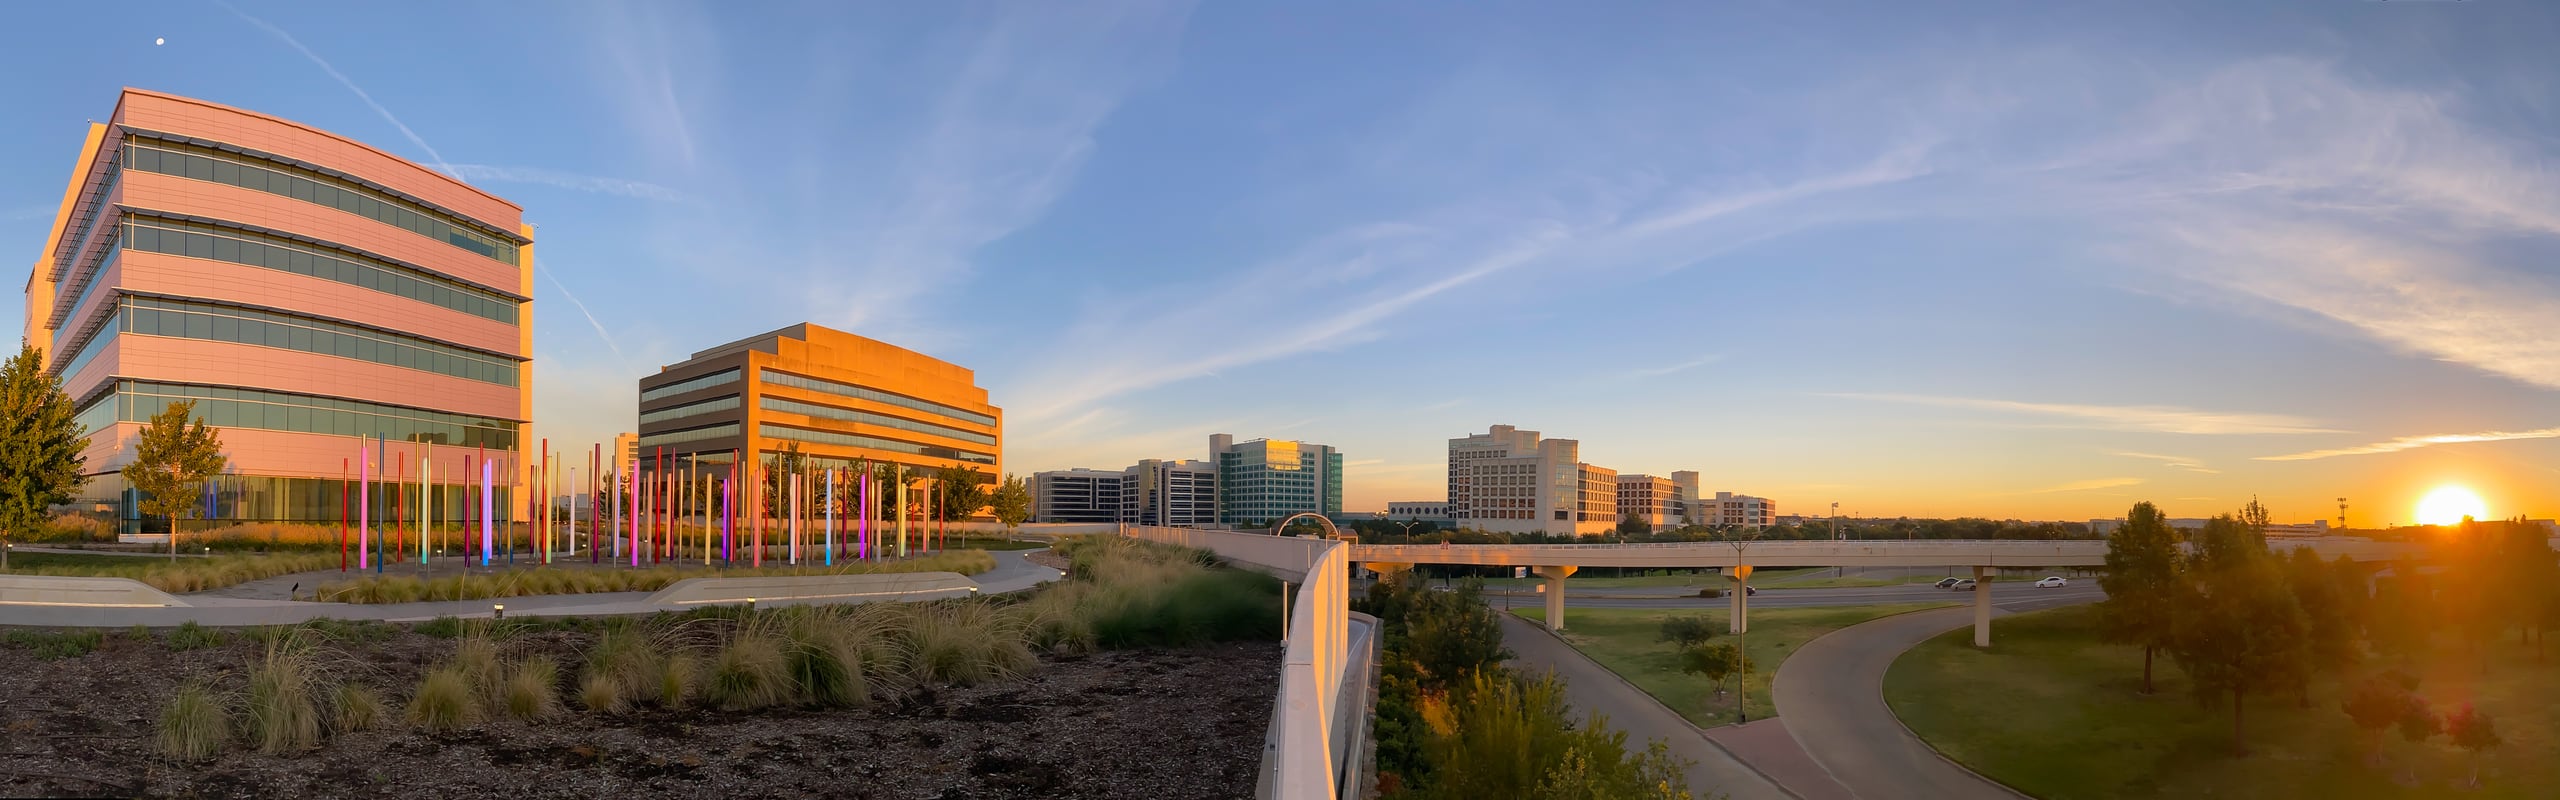 west-campus-sunrise-2560x800.jpg